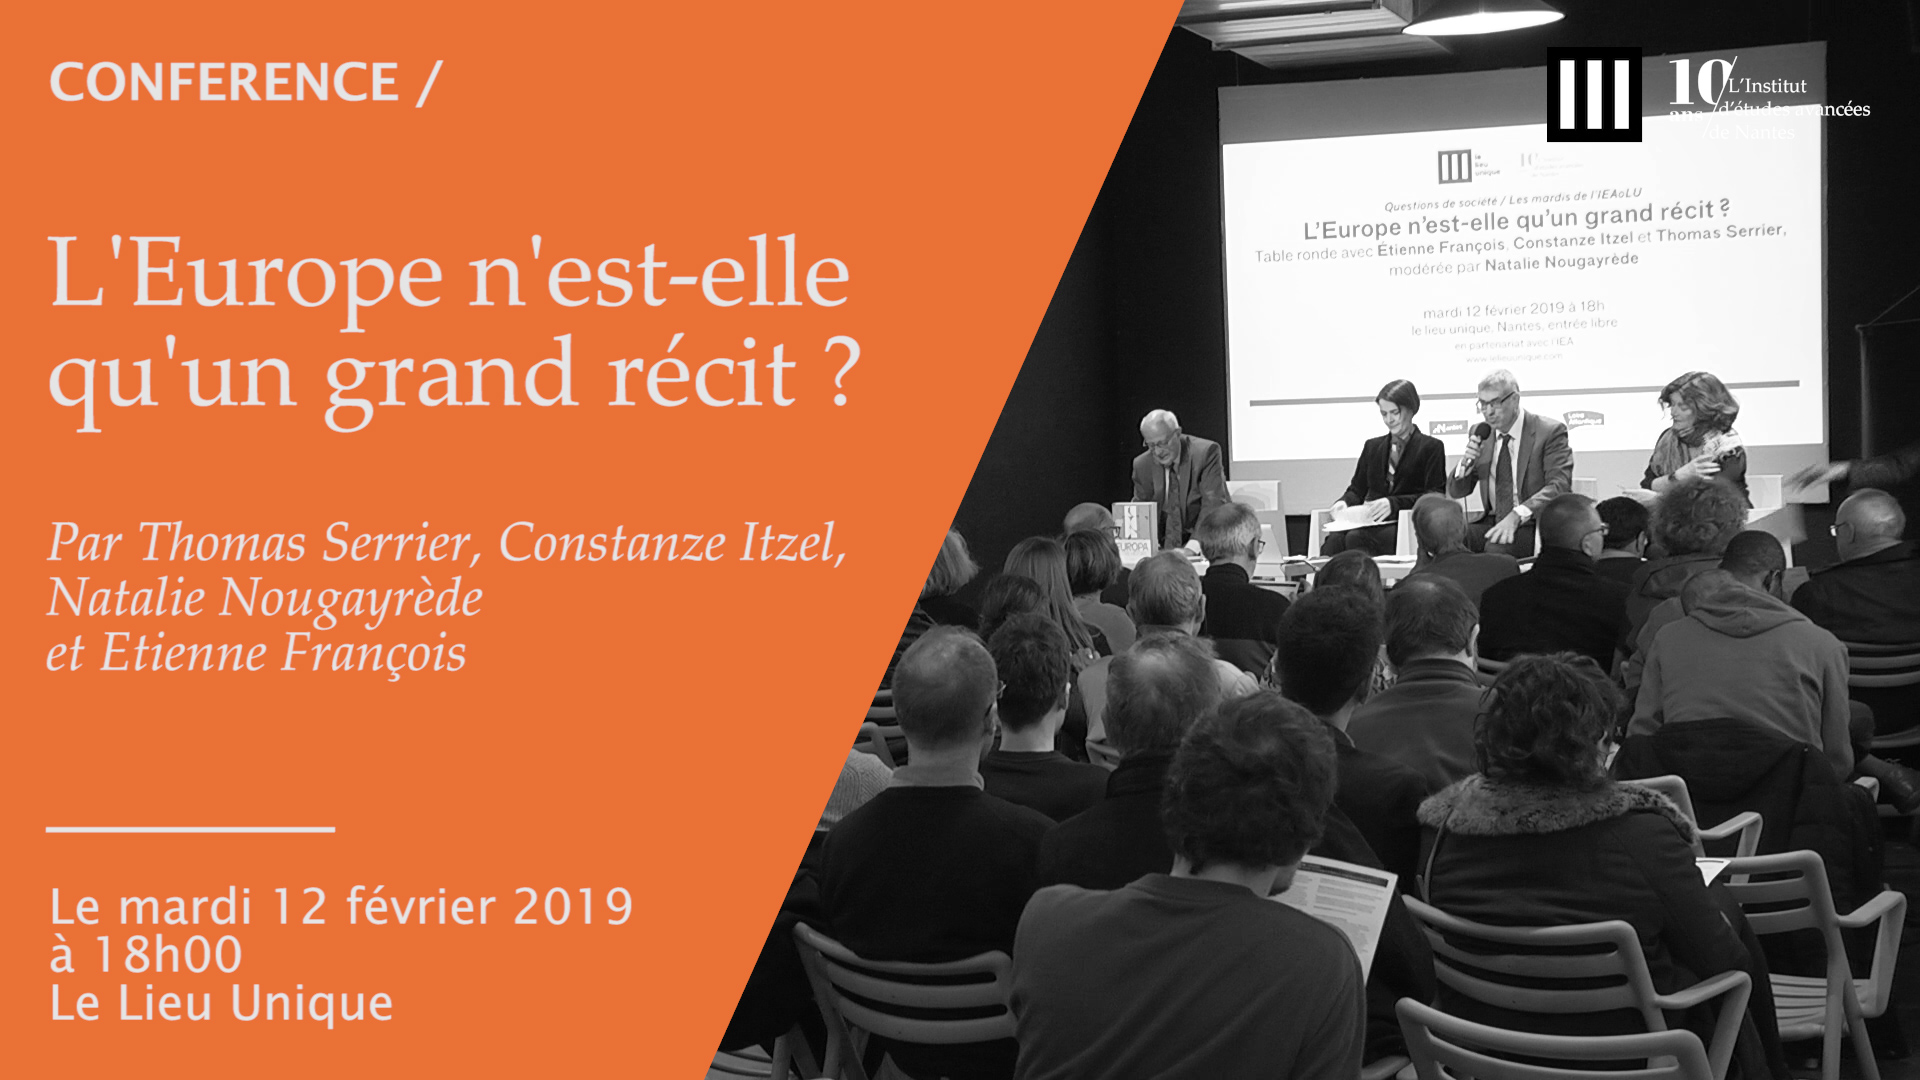 Conférence #197 de Thomas Serrier, Constanze Itzel, Natalie Nougayrède et Etienne François : " L'Europe n'est-elle qu'un grand récit ? "